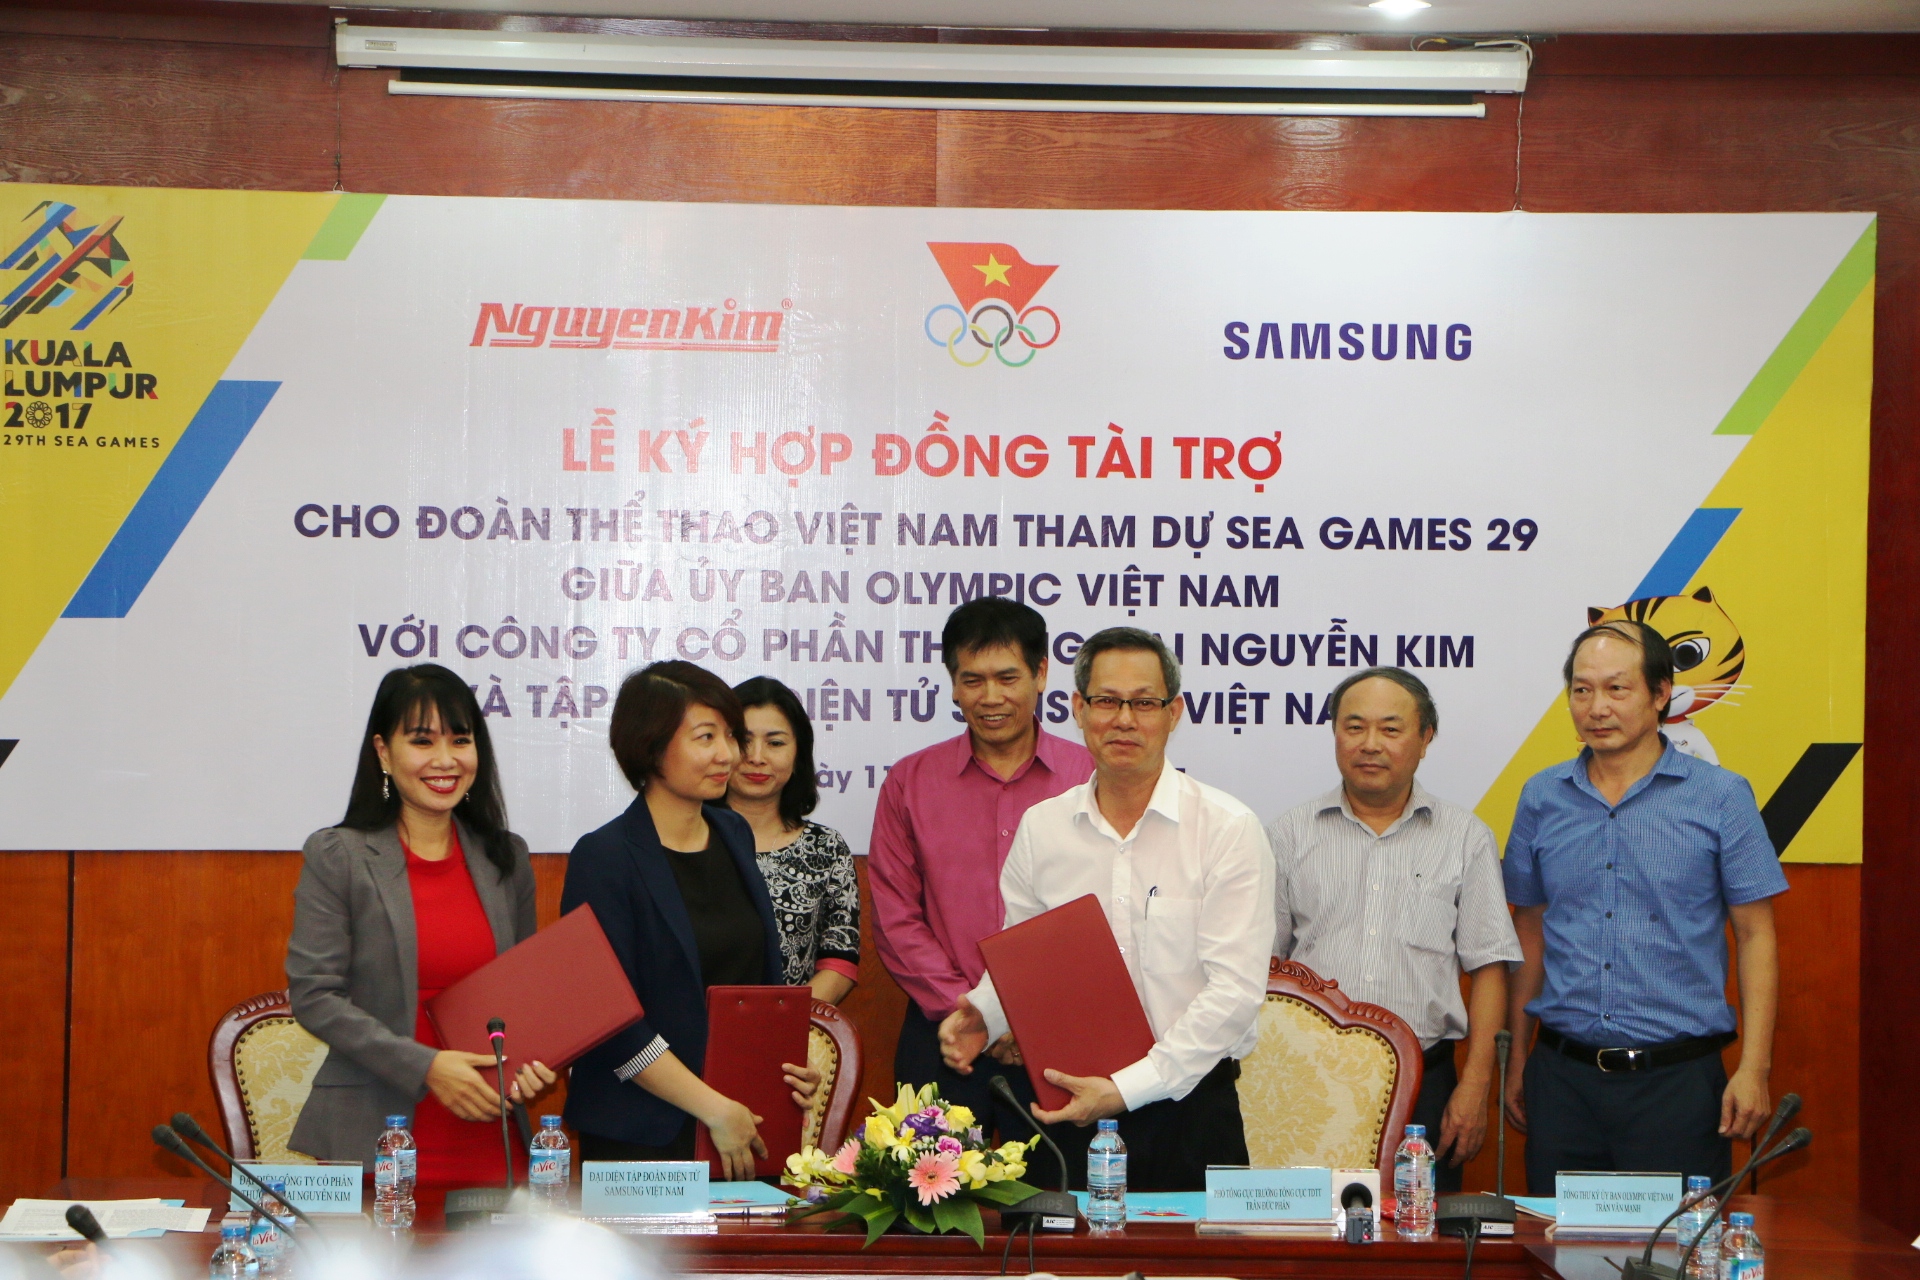 Ông Trần Văn Mạnh - Tổng thư ký Ủy Ban Olympic Việt Nam ký kết hợp đồng tài trợ với đại diện SamSung và Nguyễn Kim